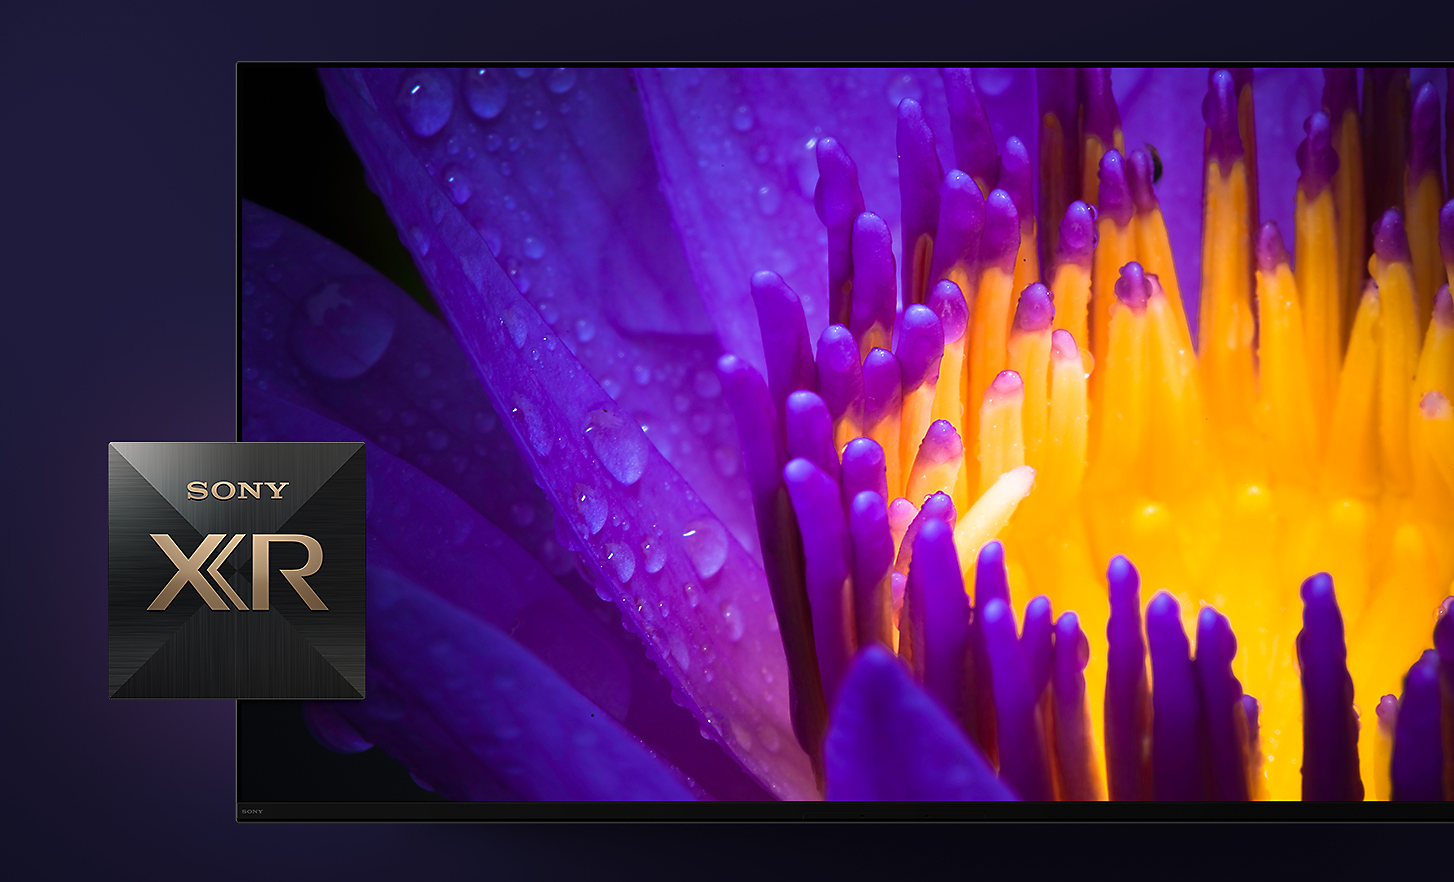 Détail de l'écran de télévision montrant les pétales jaunes et violets d'une fleur avec le logo Sony XR au premier plan